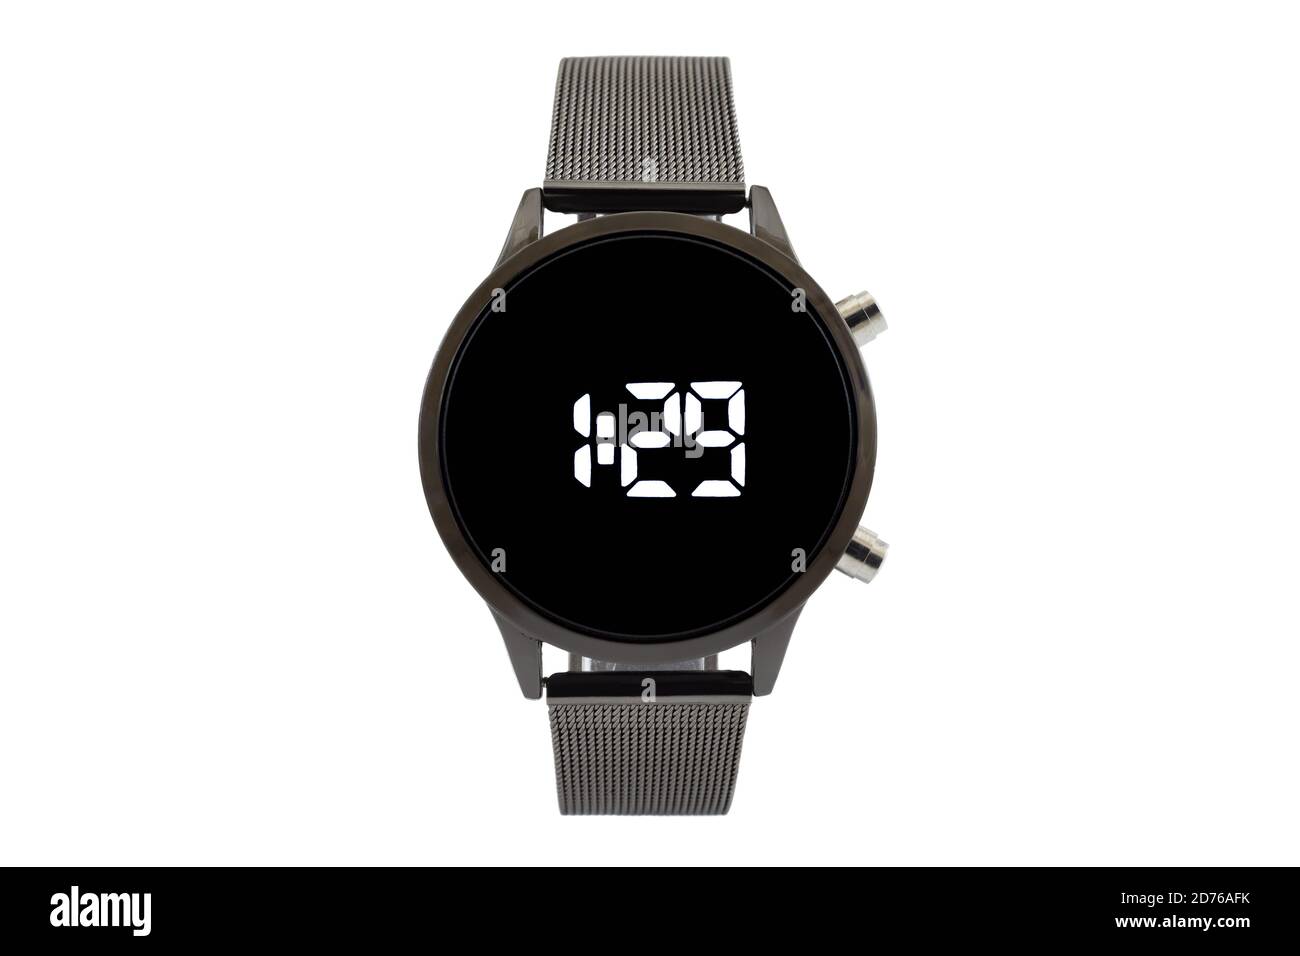 Smartwatch rotondo con cinturino in mesh nero, quadrante nero e numeri digitali, isolato su sfondo bianco. Foto Stock